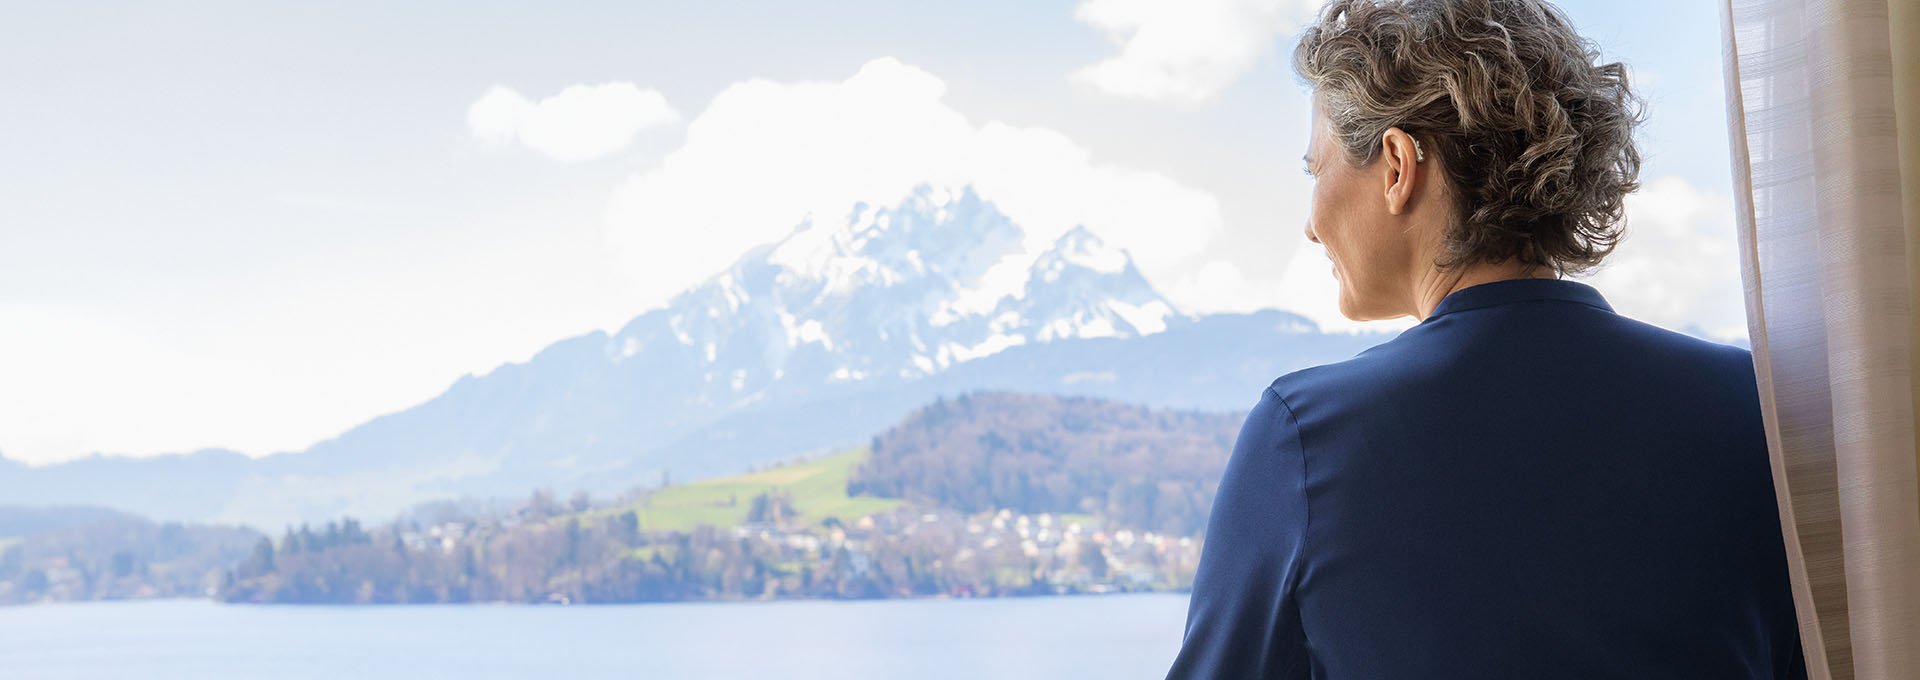 Femme portant des aides auditives rechargeables Bernafon Alpha et qui profite de la vue sur le lac suisse et les montagnes depuis la fenêtre d'un hôtel.